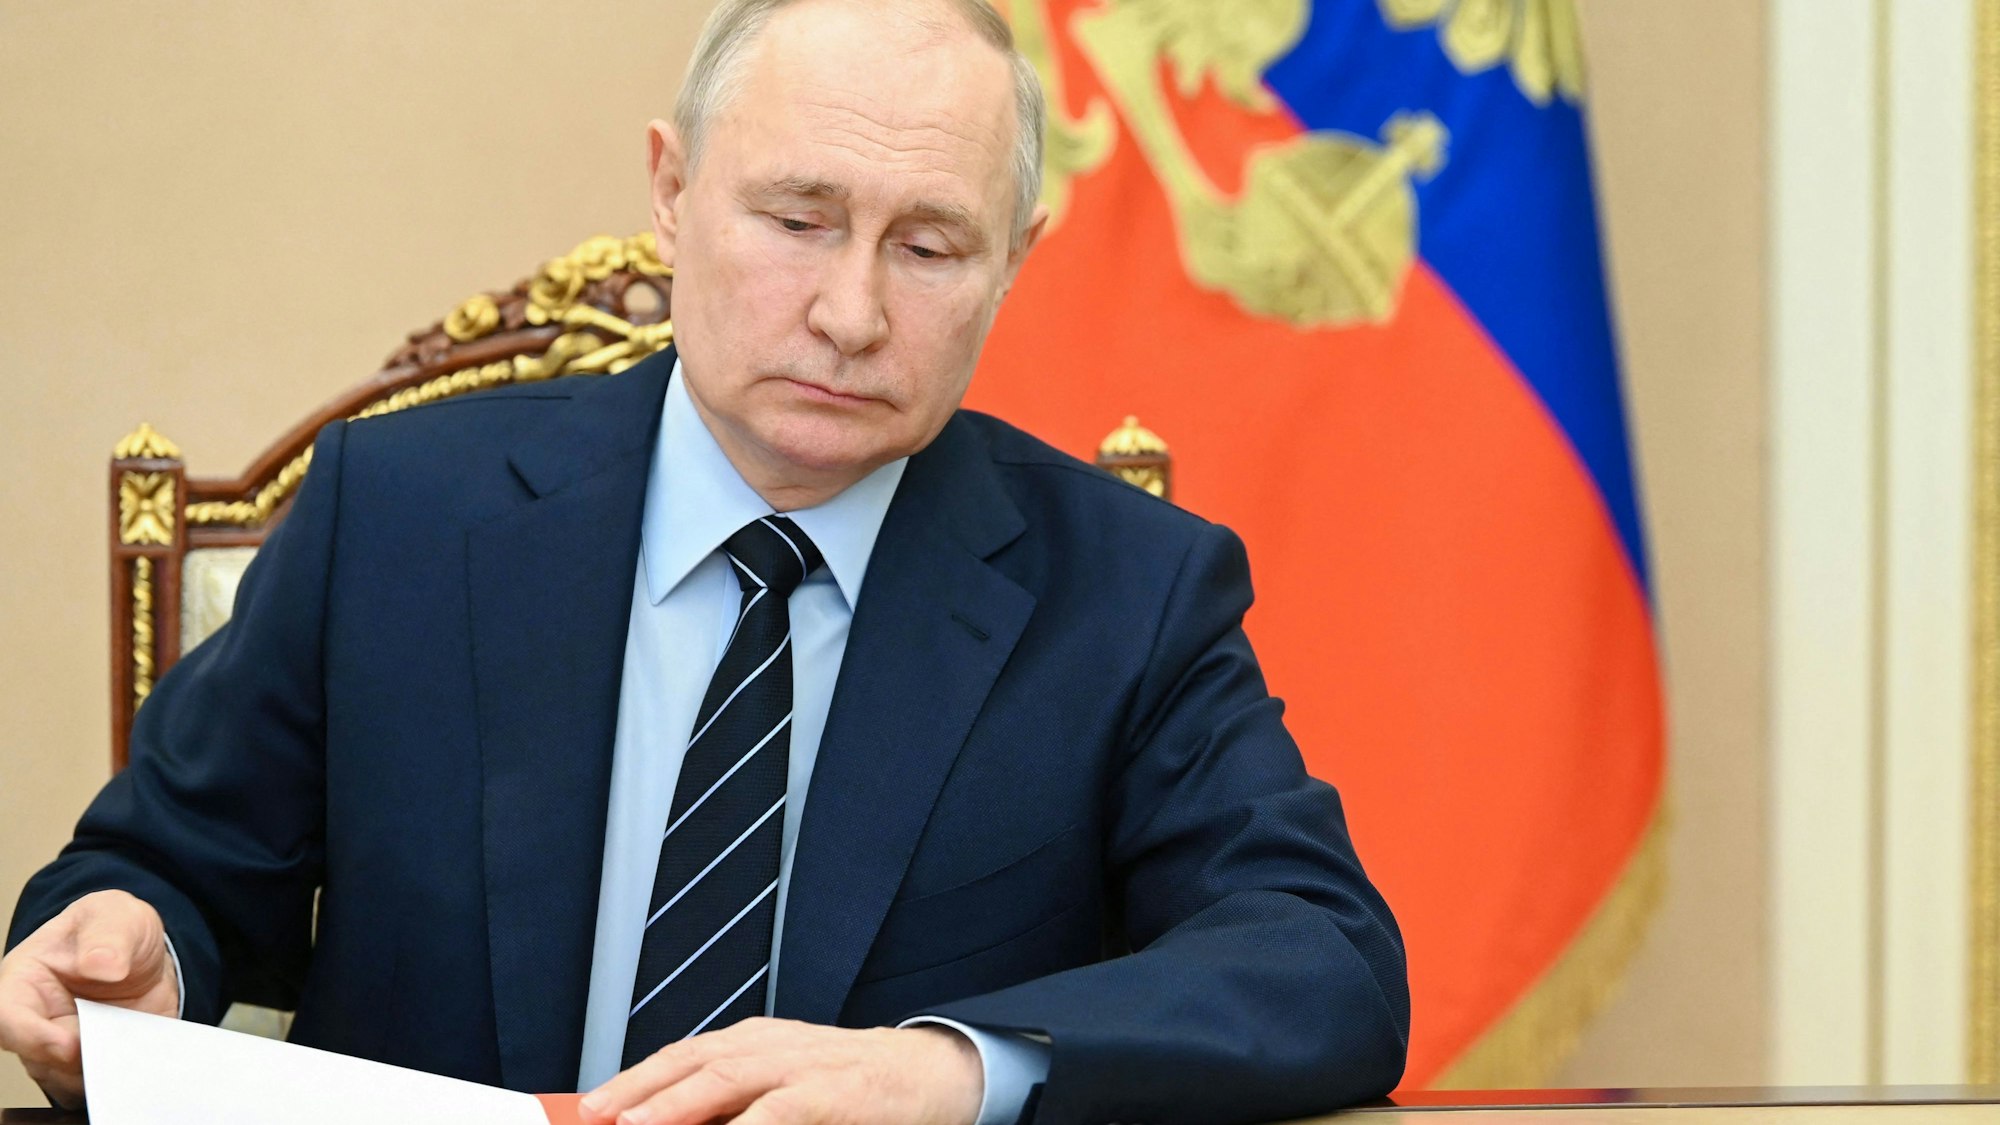 Kremlchef Putin gängelt mit seiner Verzögerungs-Taktik nicht nur Kiew, sondern demonstriert auch seine Macht gegenüber der Weltgemeinschaft.